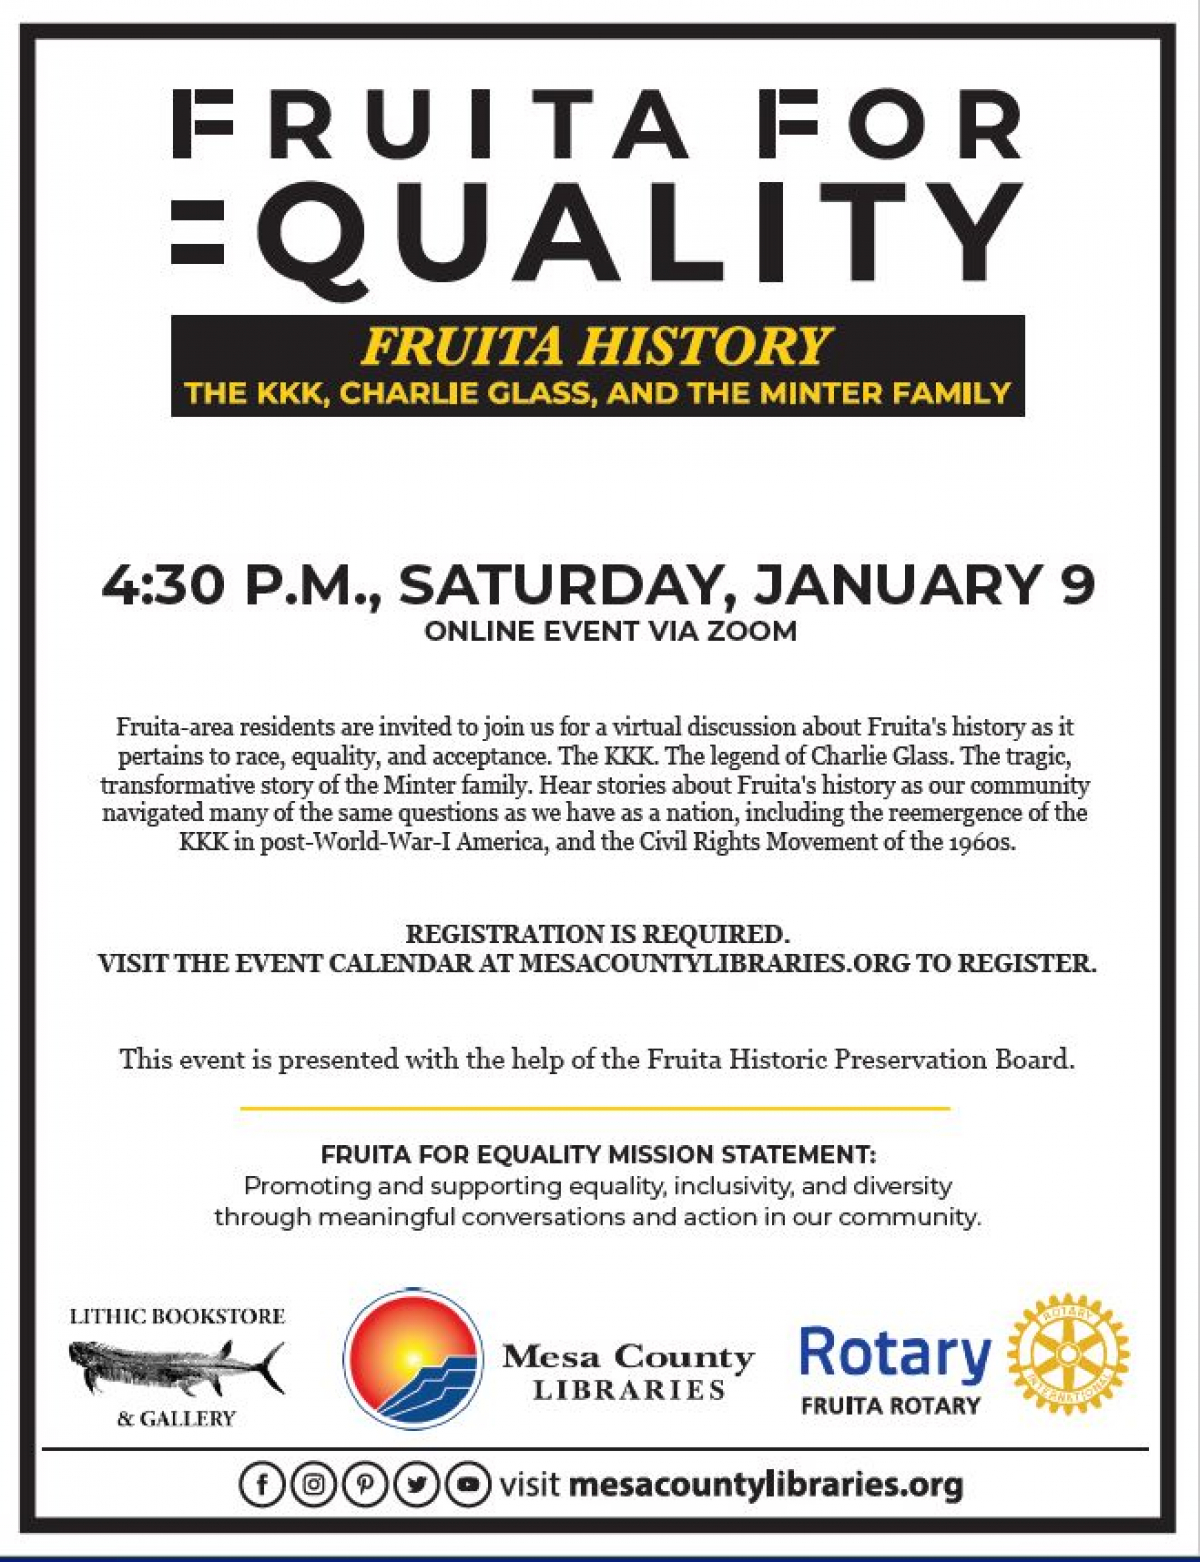 Fruita for Equality Event Fruita History Virtual City of Fruita Colorado